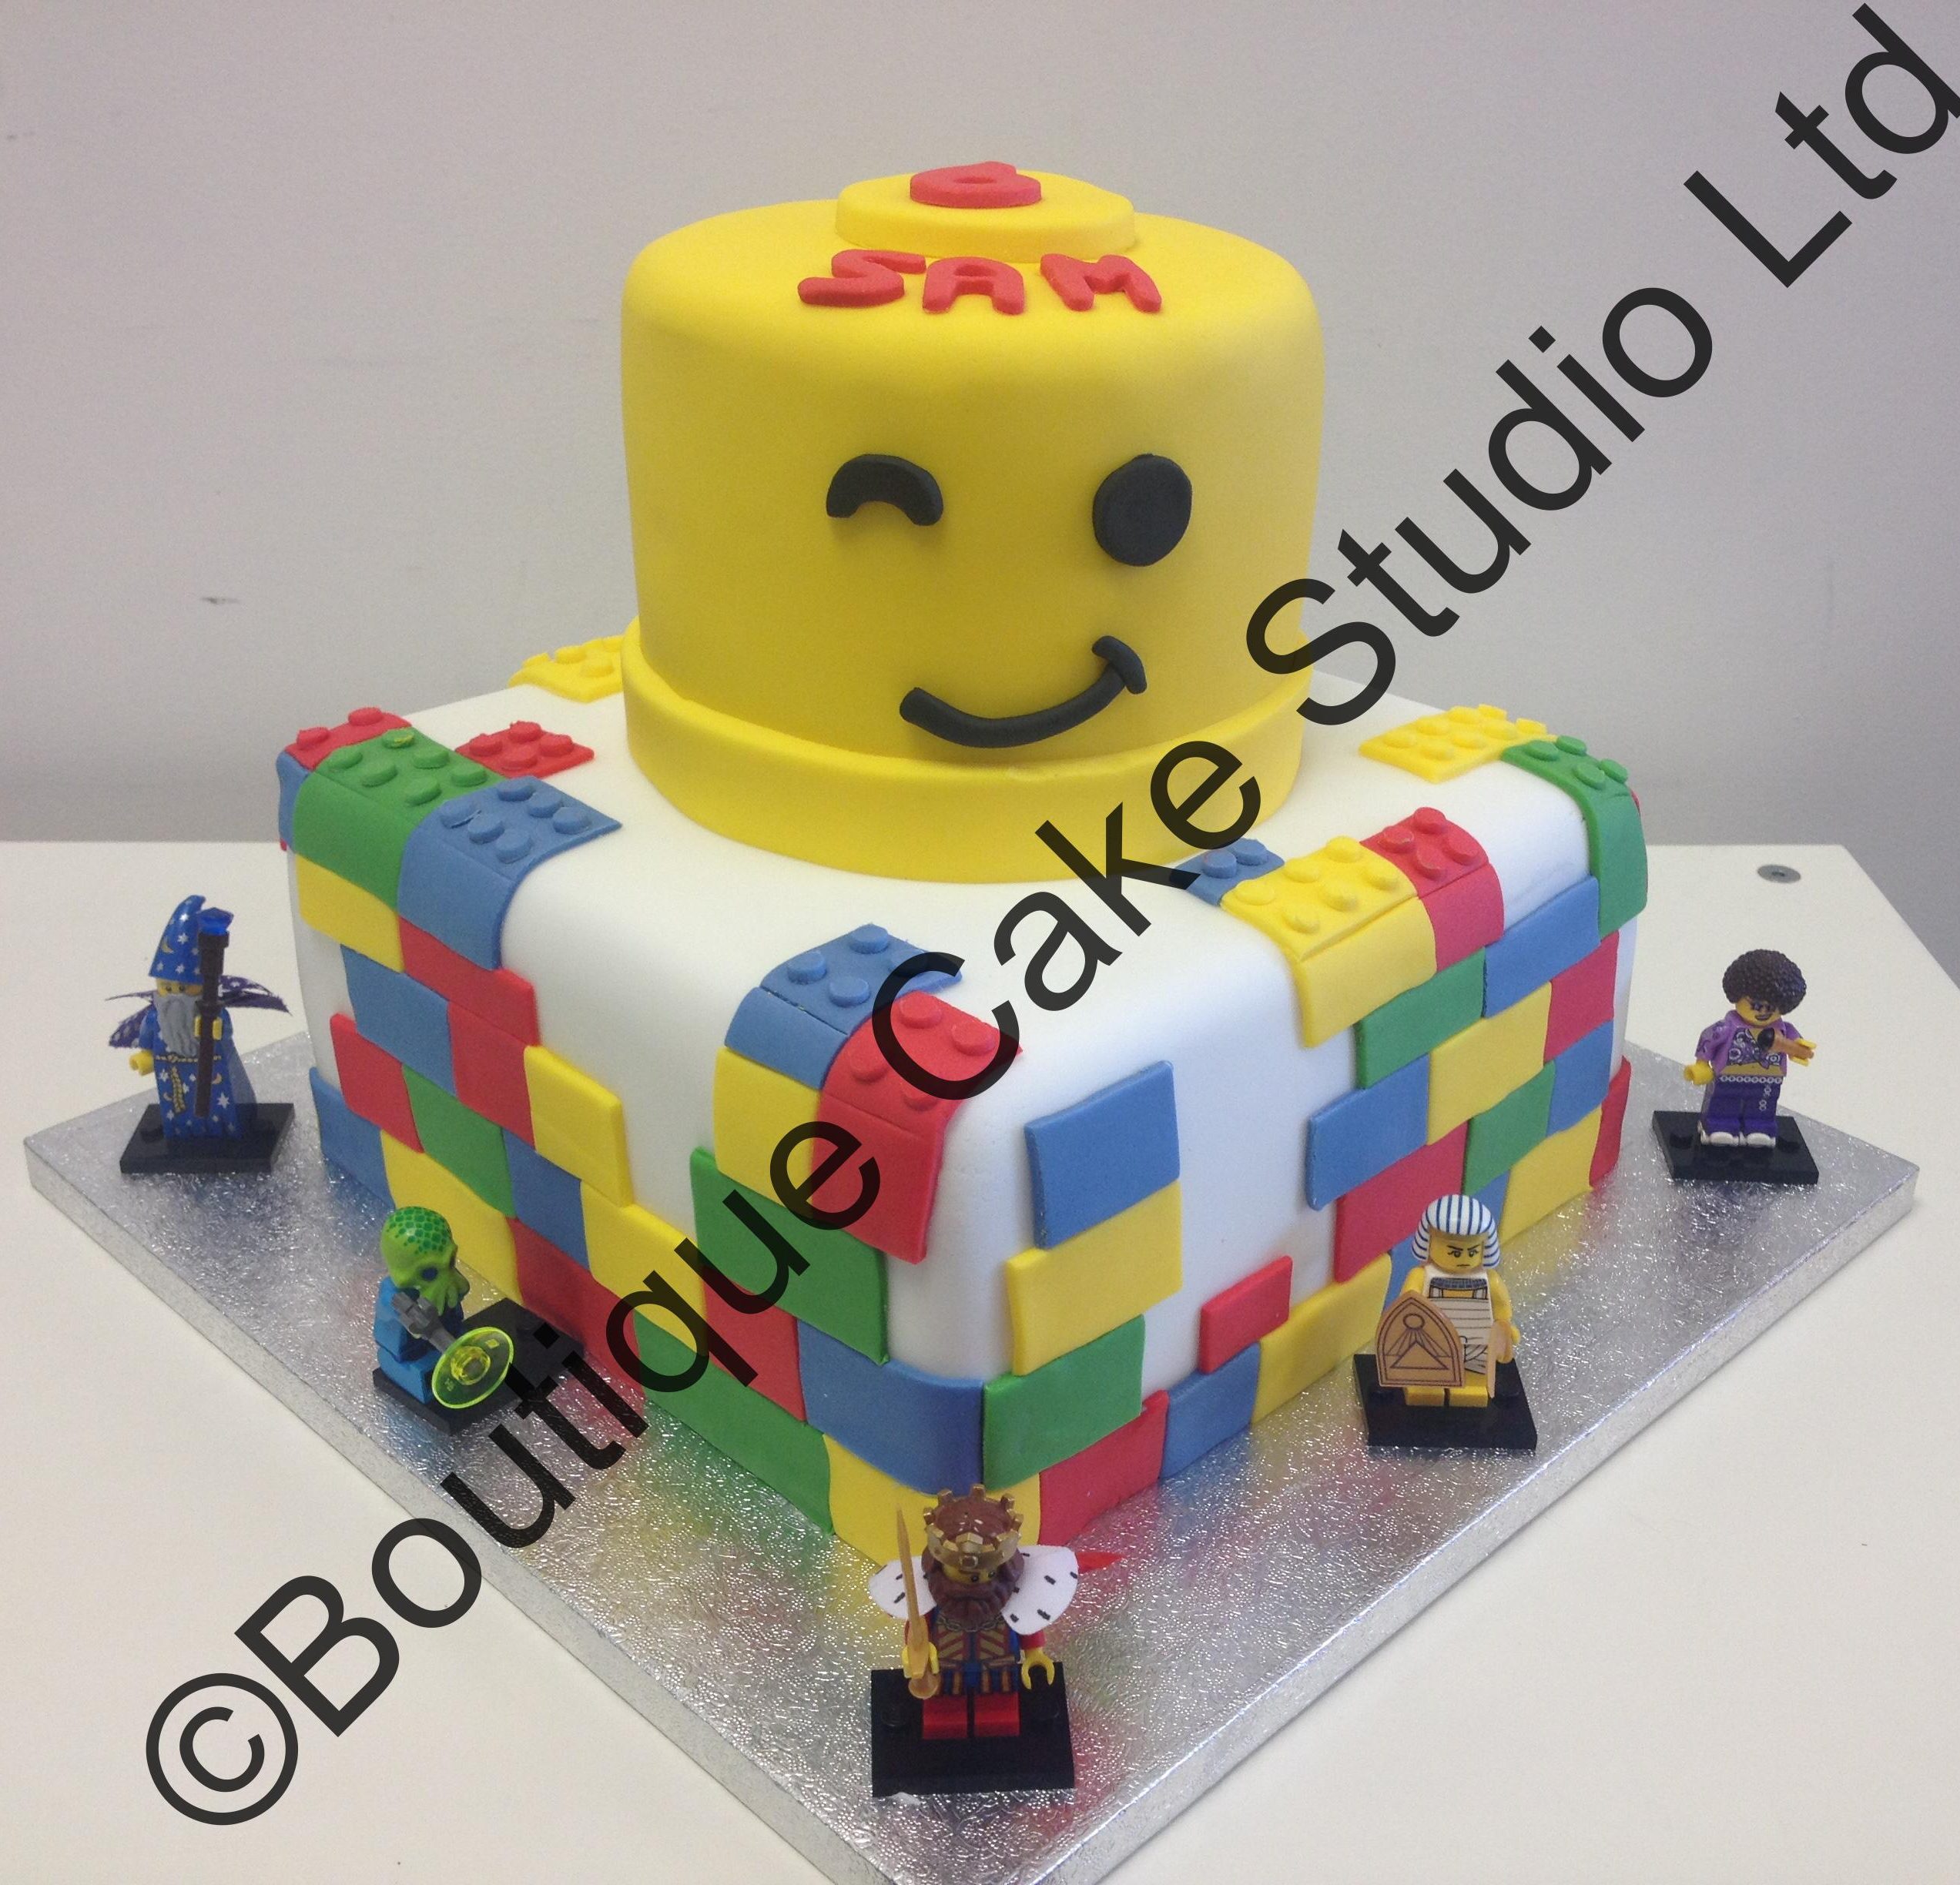 Lego themed Cake